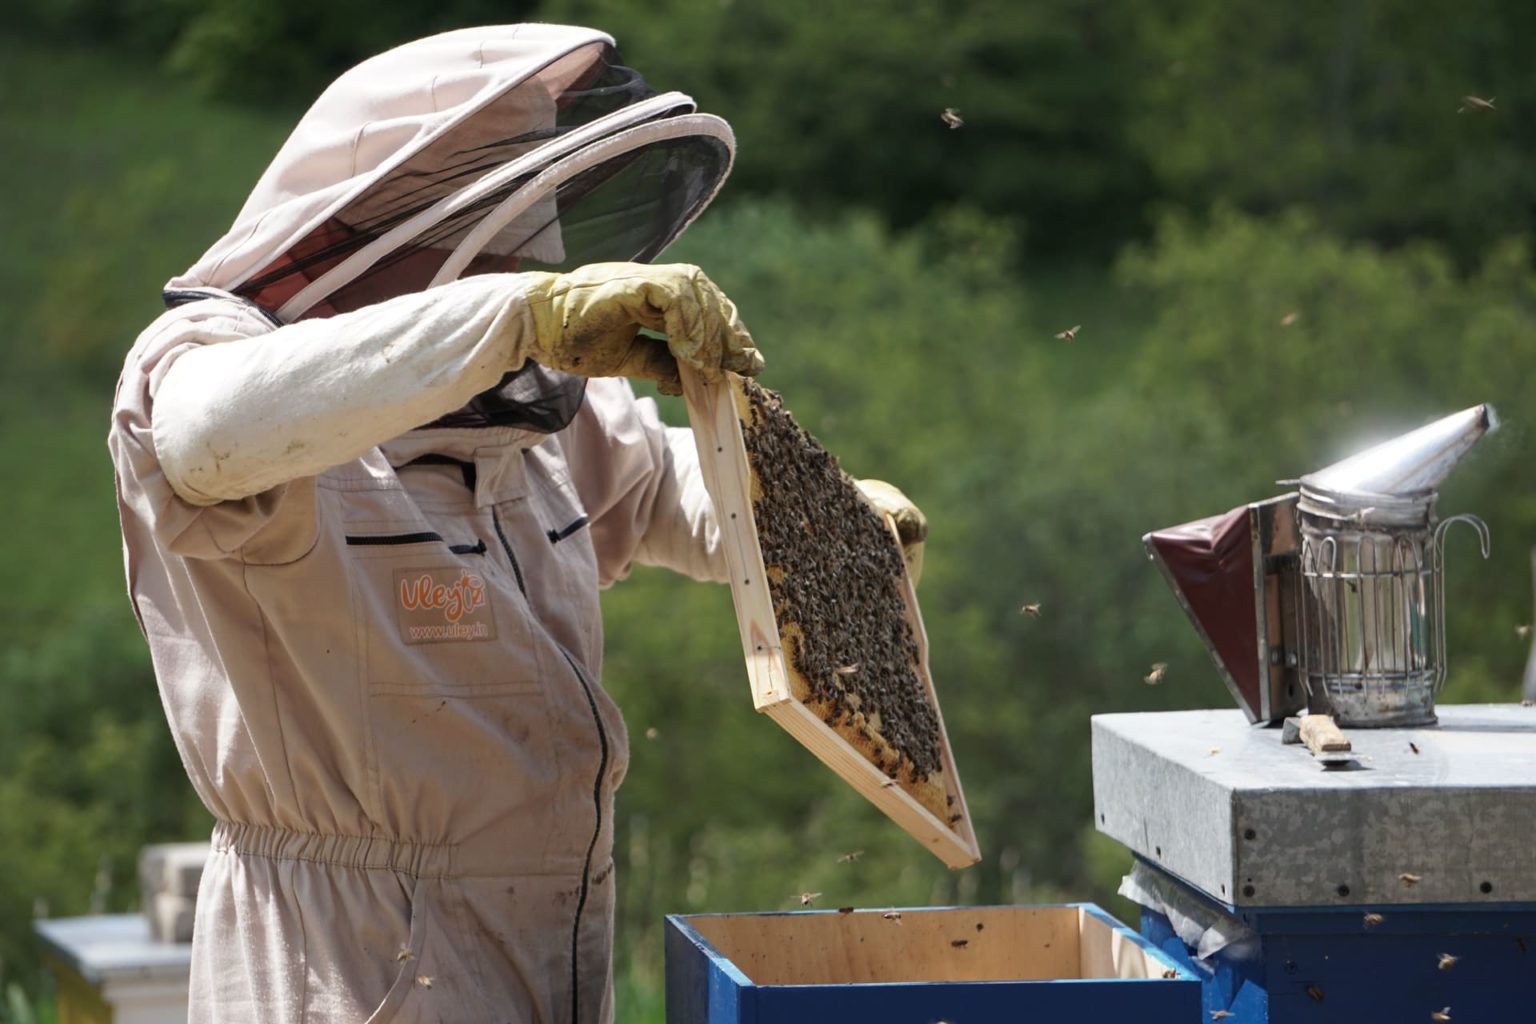 Beginner Beekeeping Course - Bee Ware